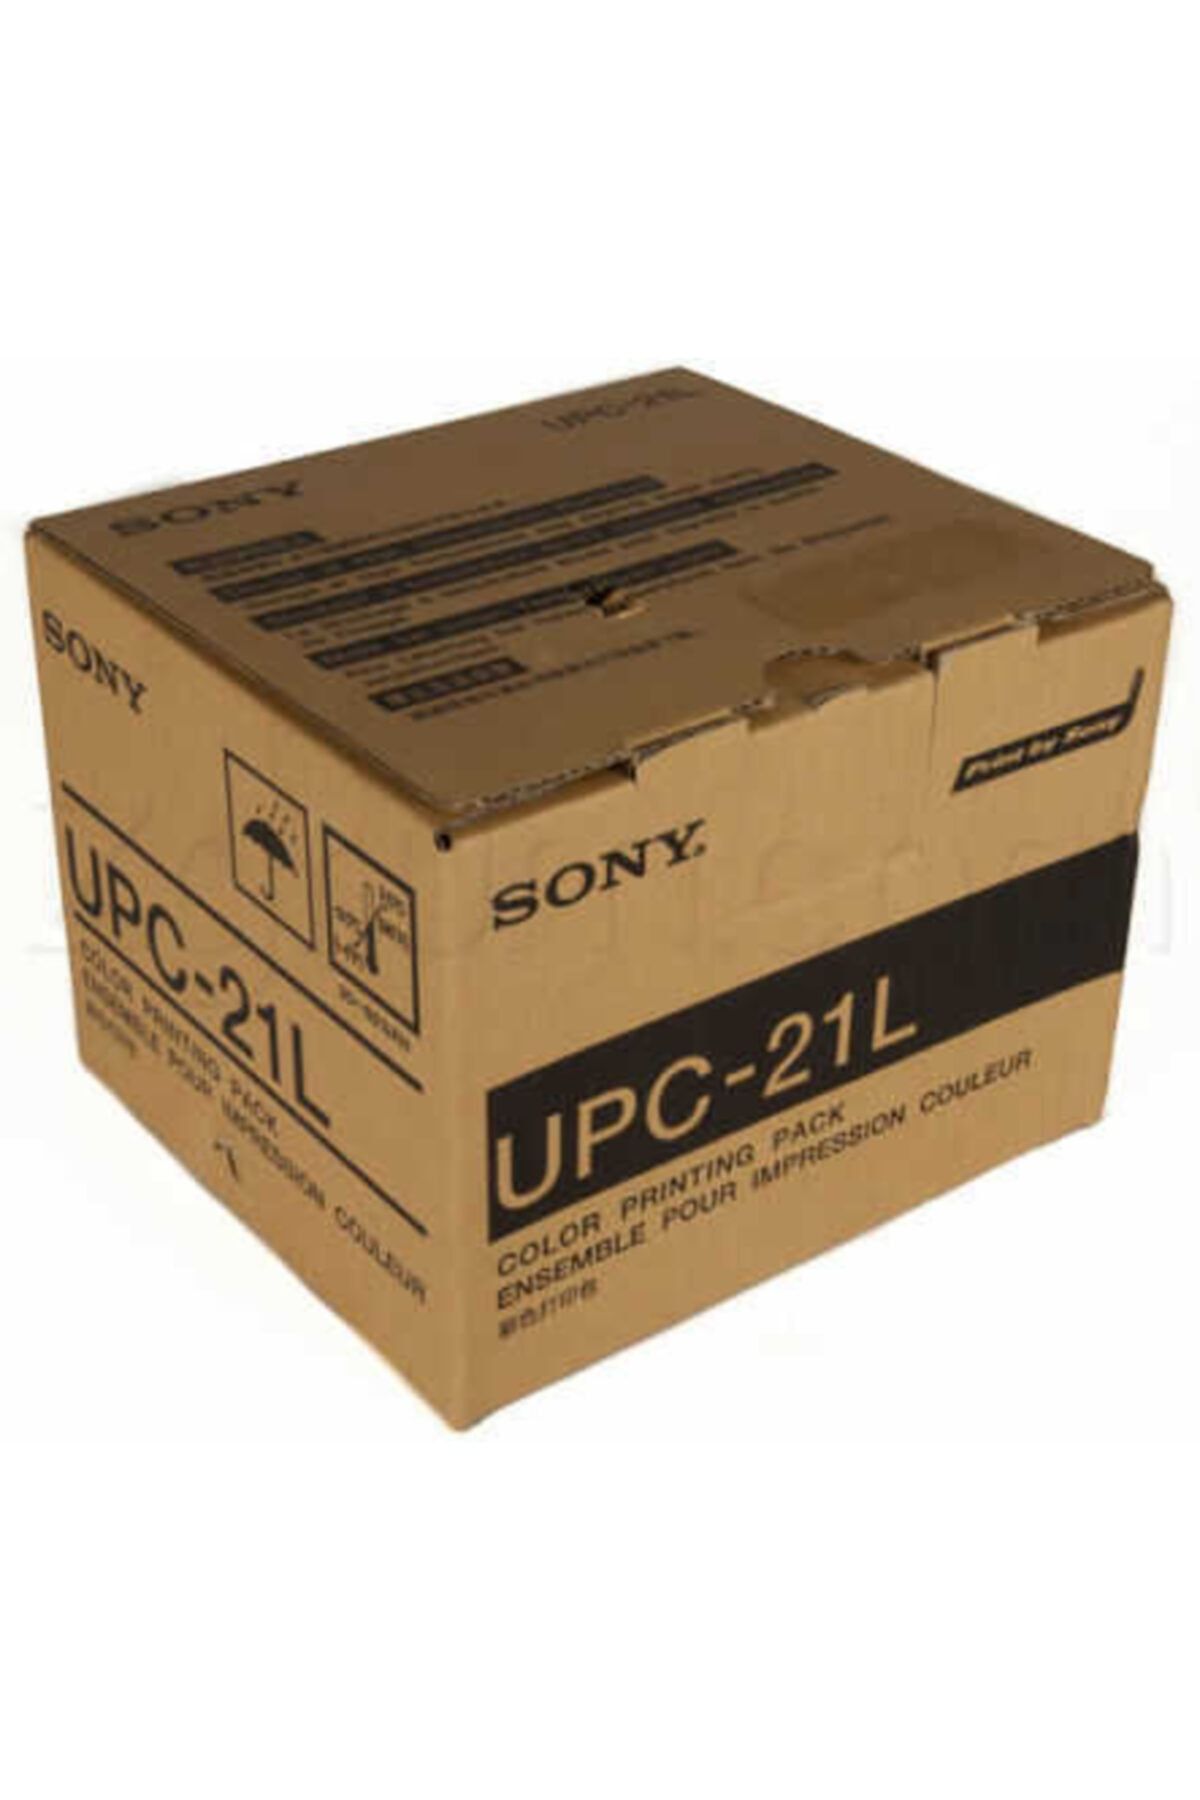 Sony Upc-21l Ultrason Kağıdı